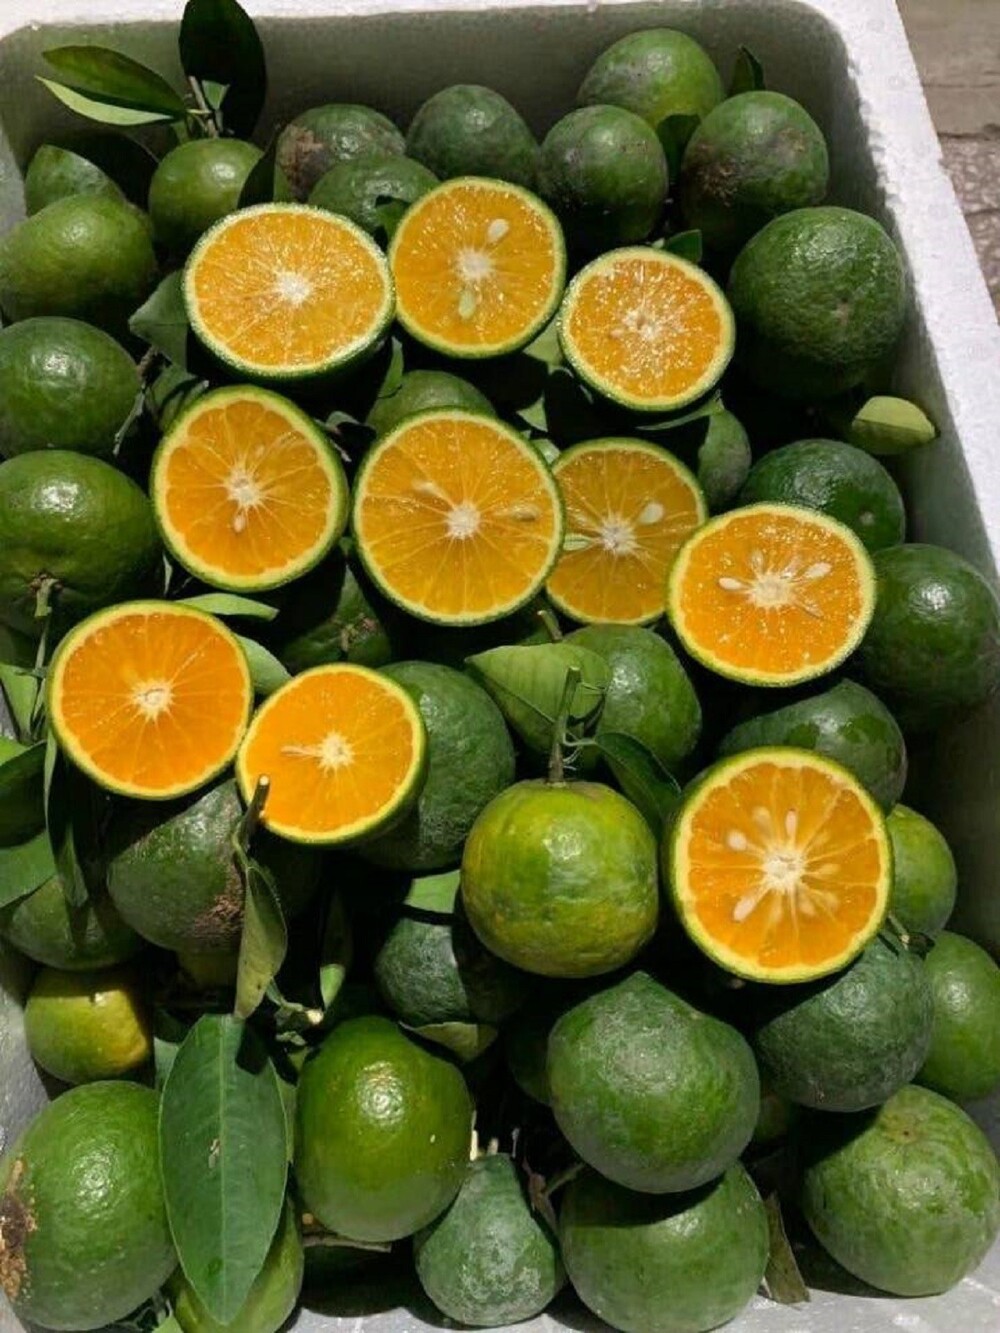 21. В тропиках спелые апельсины имеют зелёную кожуру